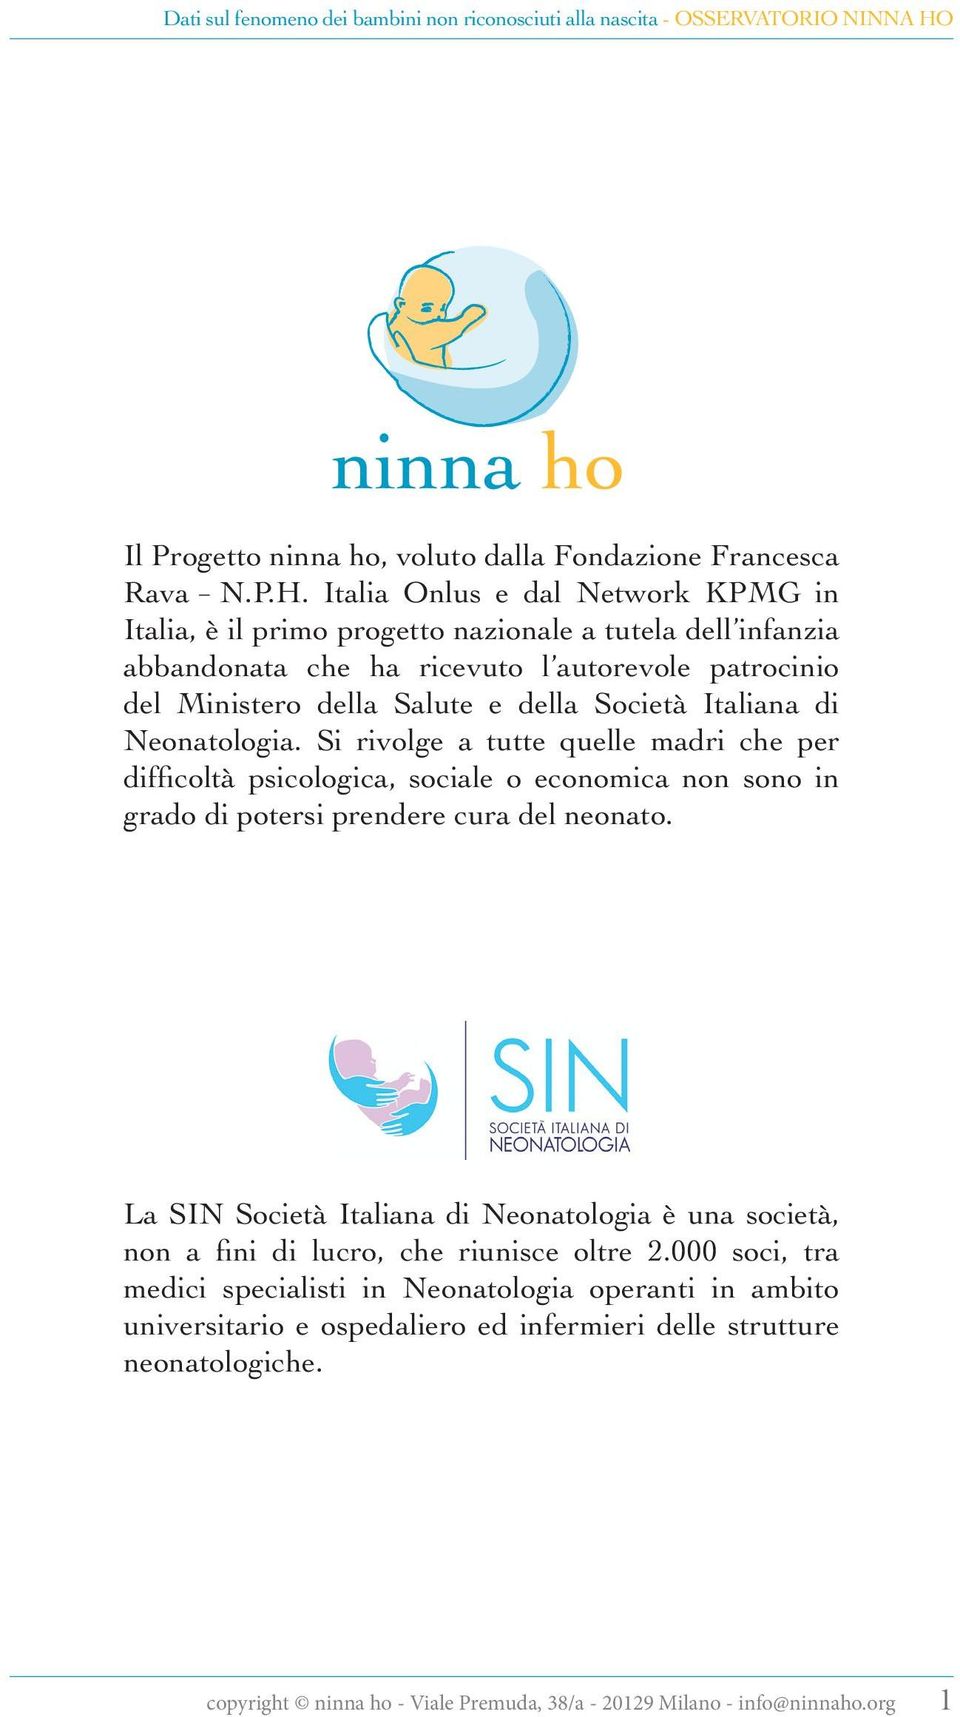 Italia Onlus e dal Network KPMG in Italia, è il primo progetto nazionale a tutela dell infanzia abbandonata che ha ricevuto l autorevole patrocinio del Ministero della Salute e della